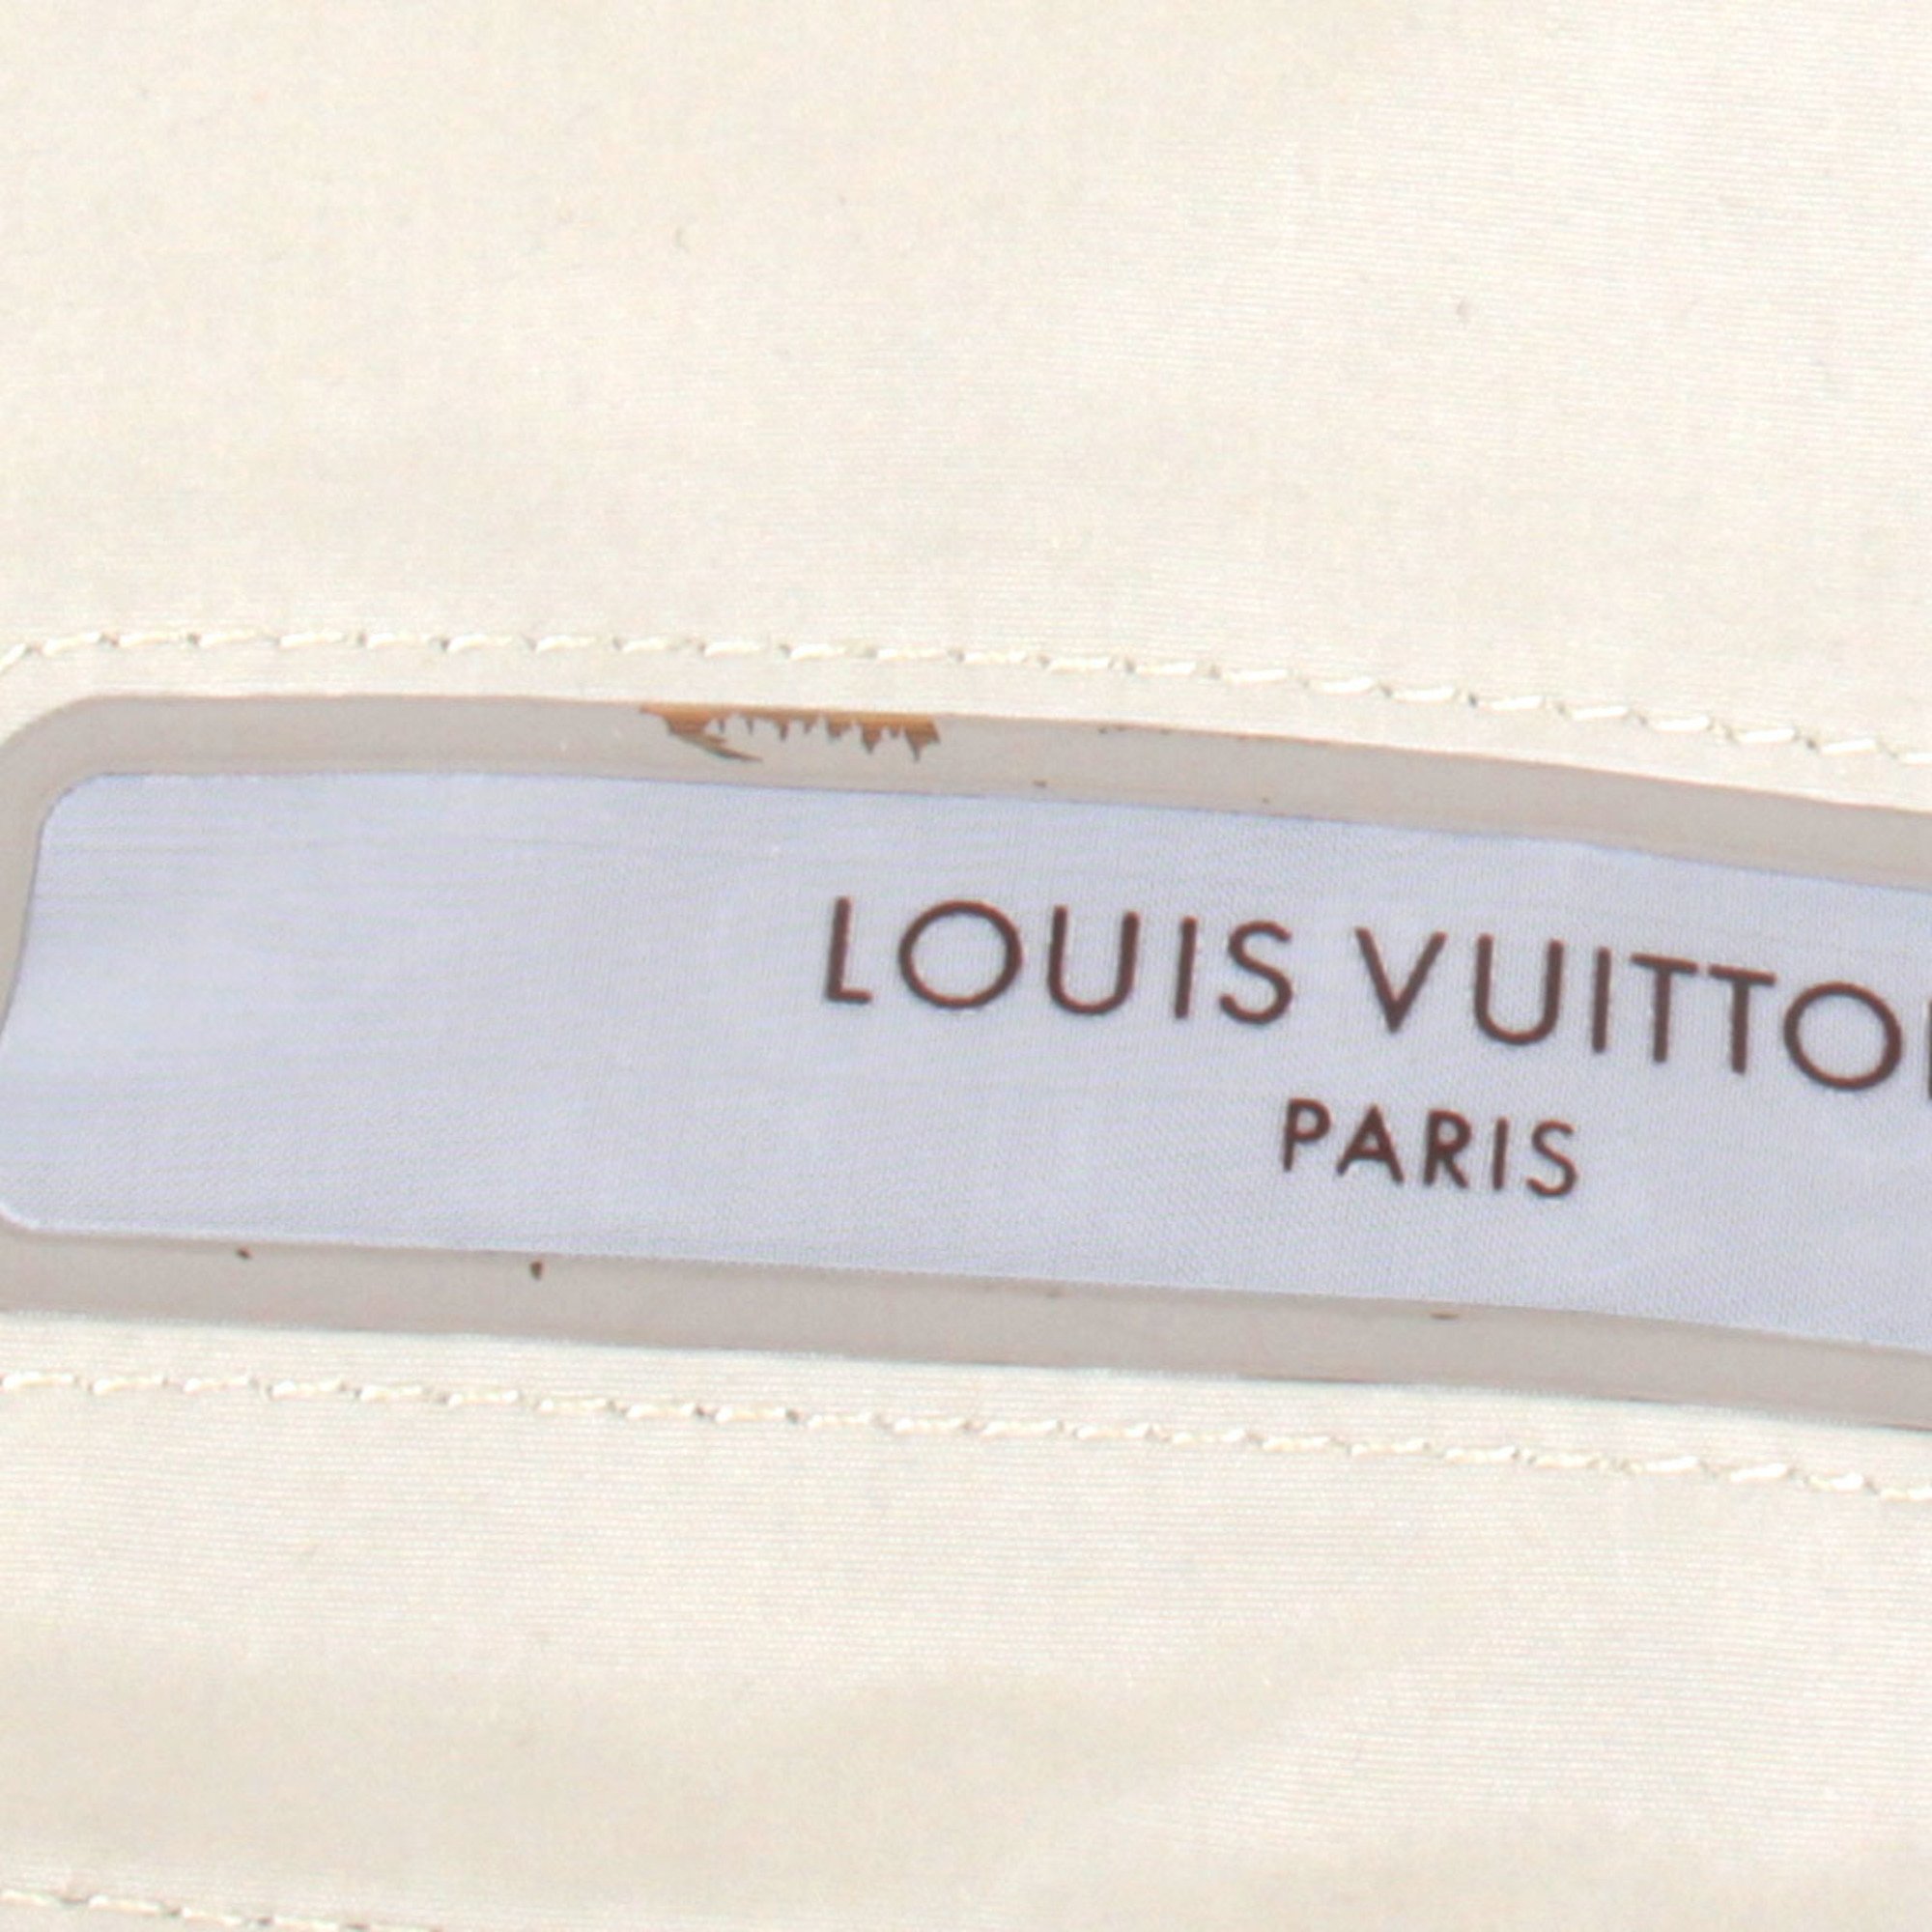 LOUIS VUITTON Truth Voyage Set Travel Pouch Polyester/Polyurethane Beige Women's